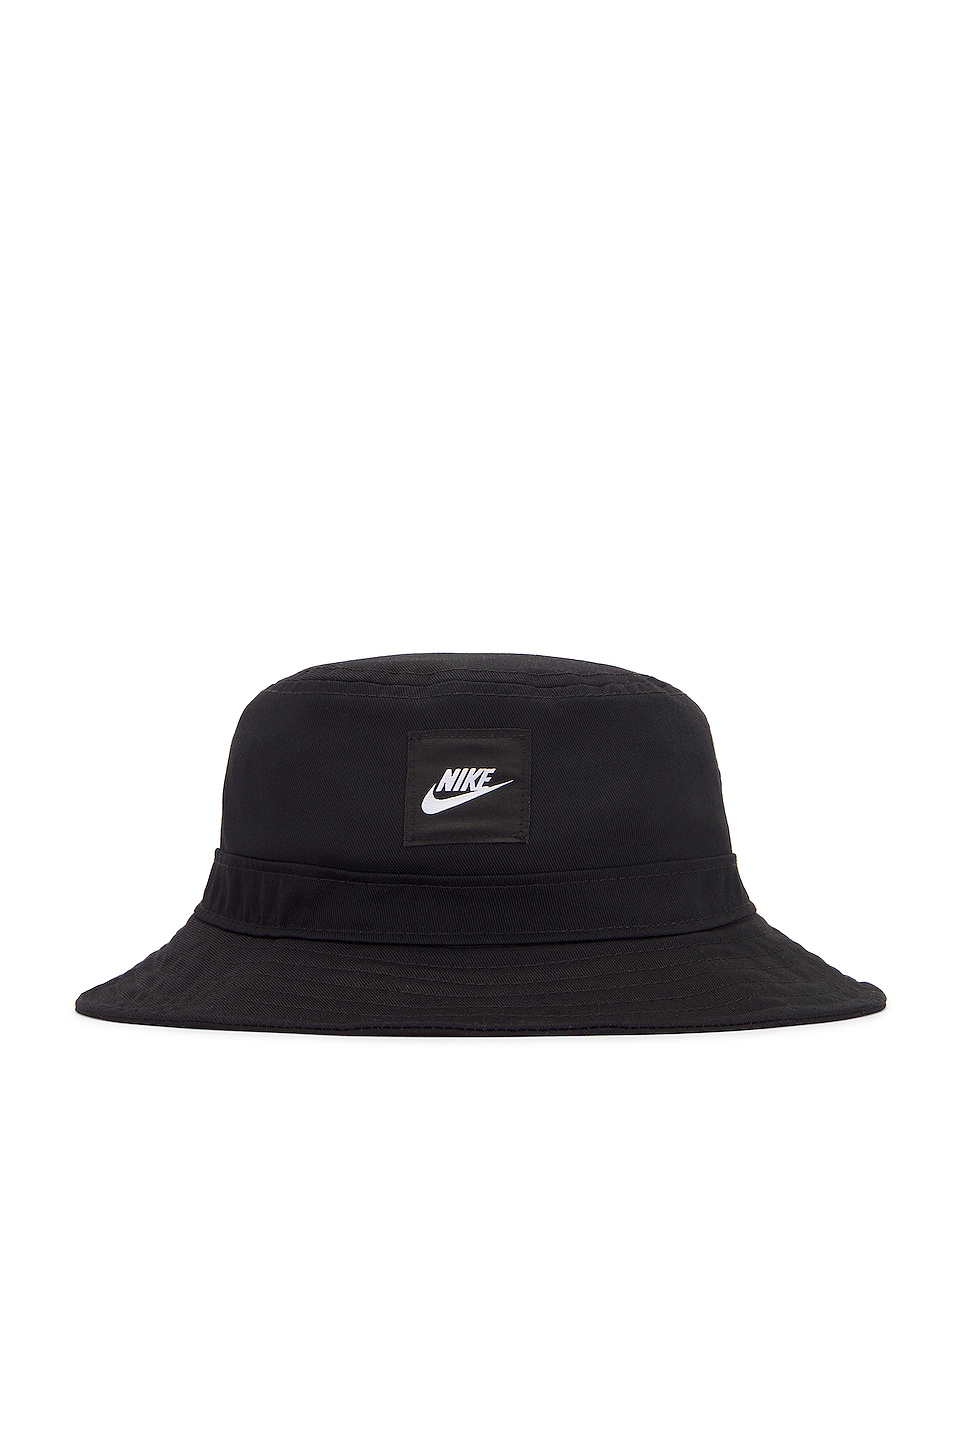 Nike Futura Bucket Hat in Black - Size S/M